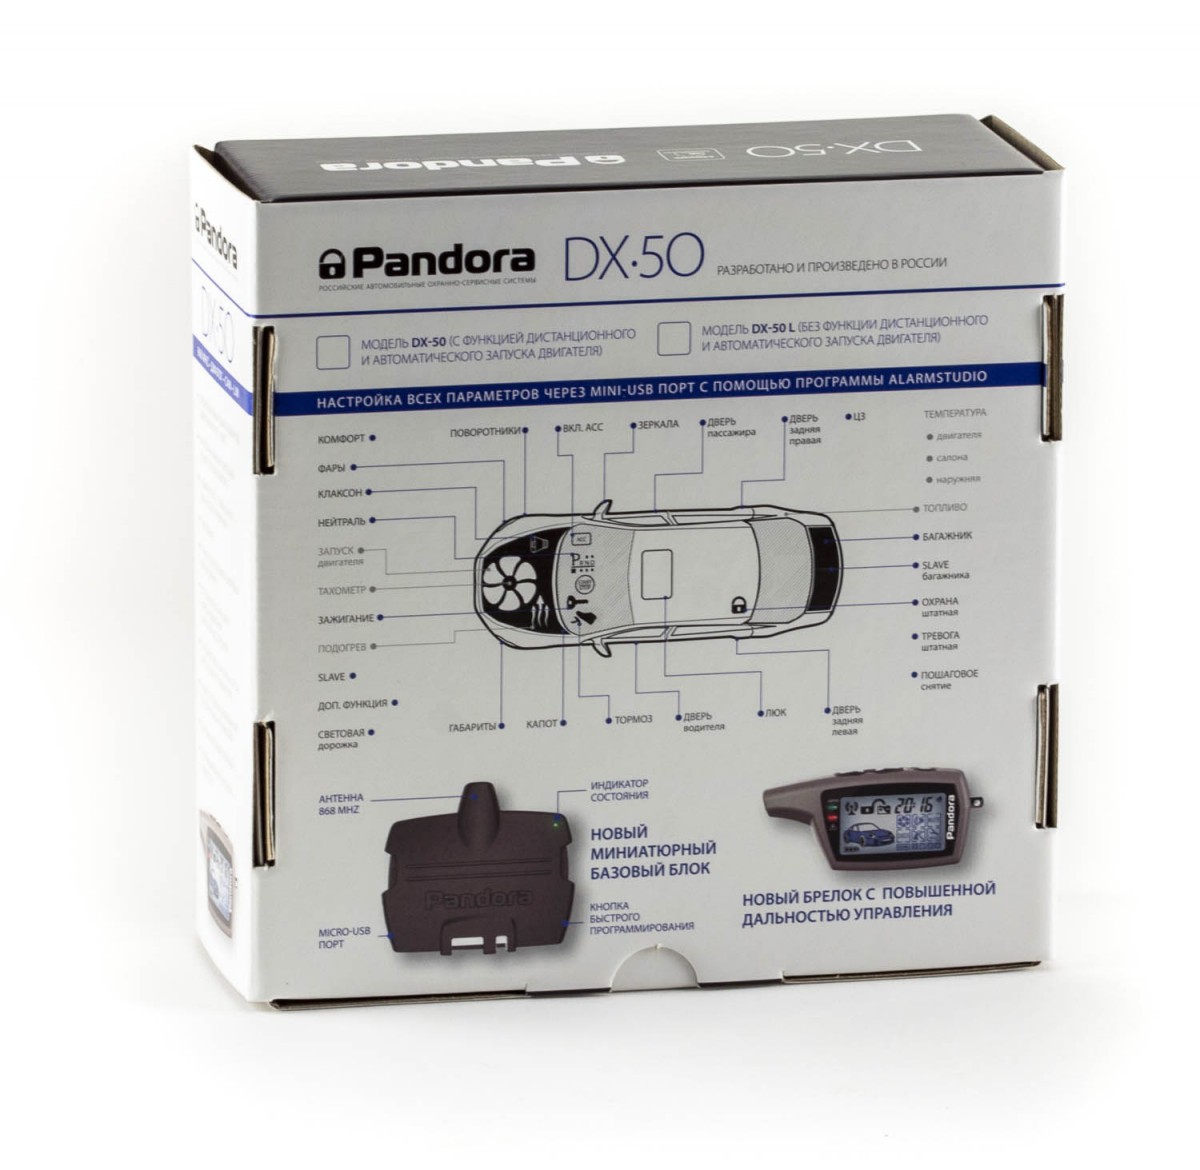 Pandora DX-50 L